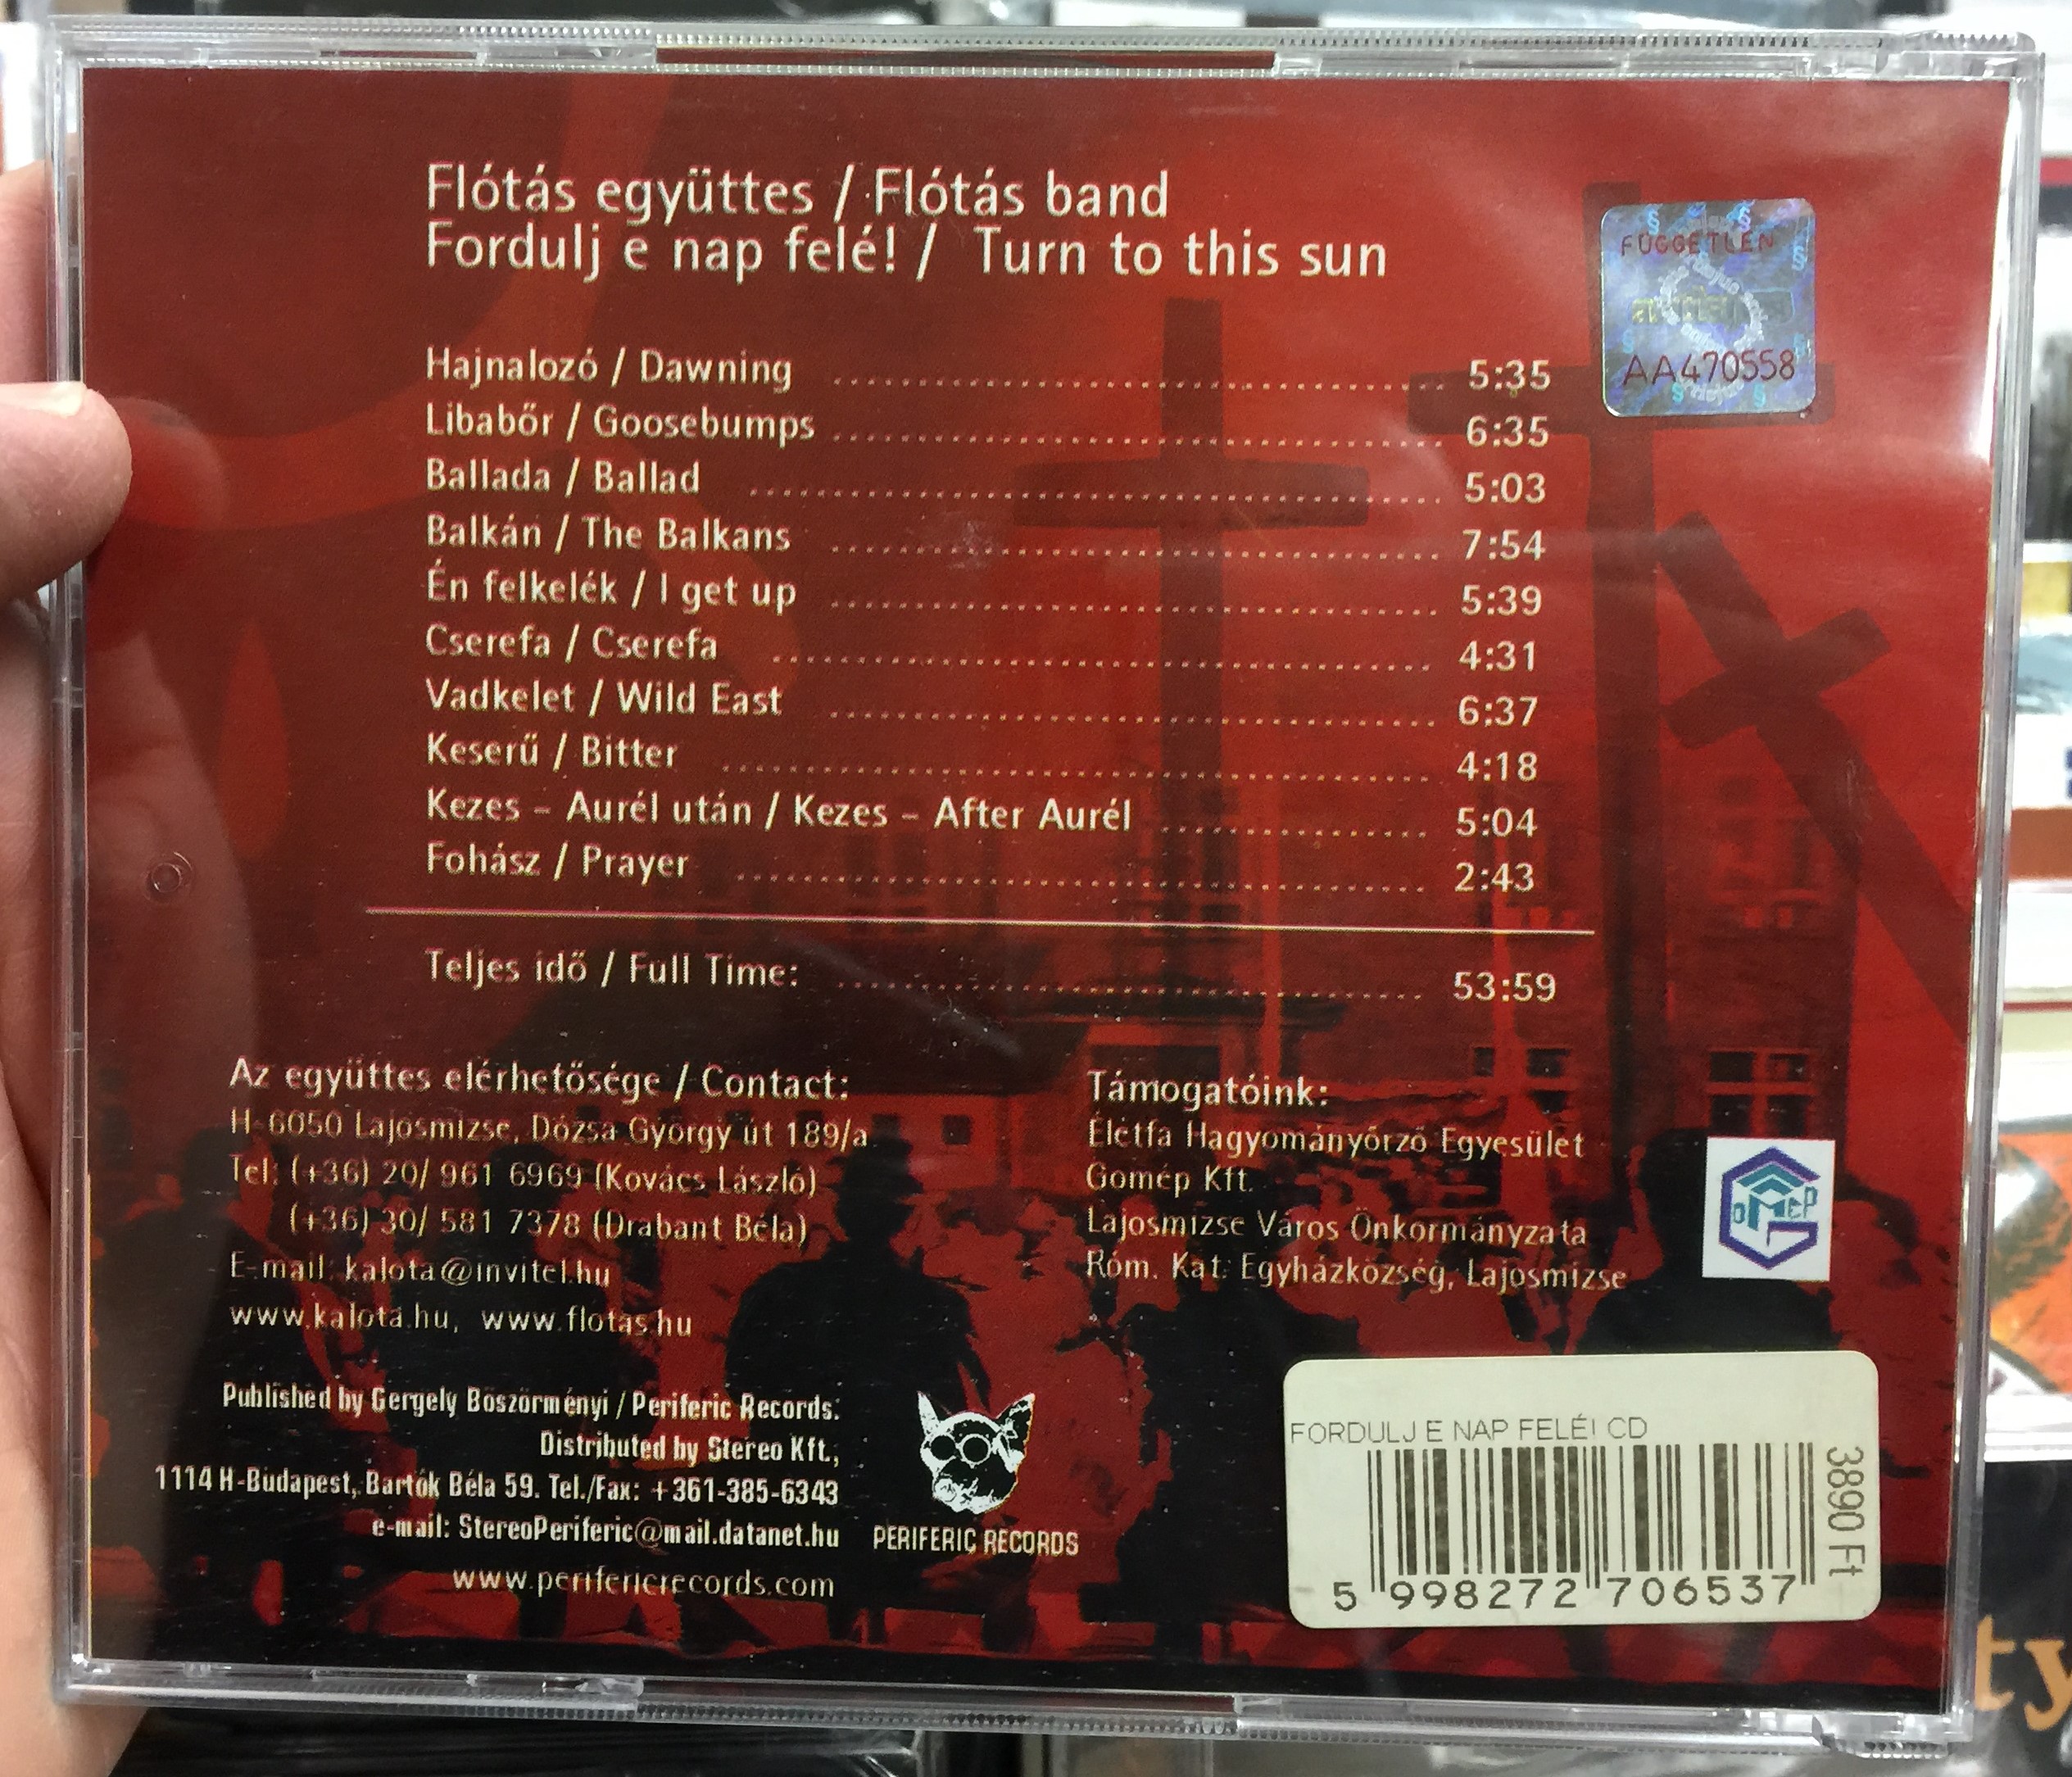 fl-t-s-ensemble-fordulj-e-nap-fel-periferic-records-audio-cd-5998272706537-2-.jpg